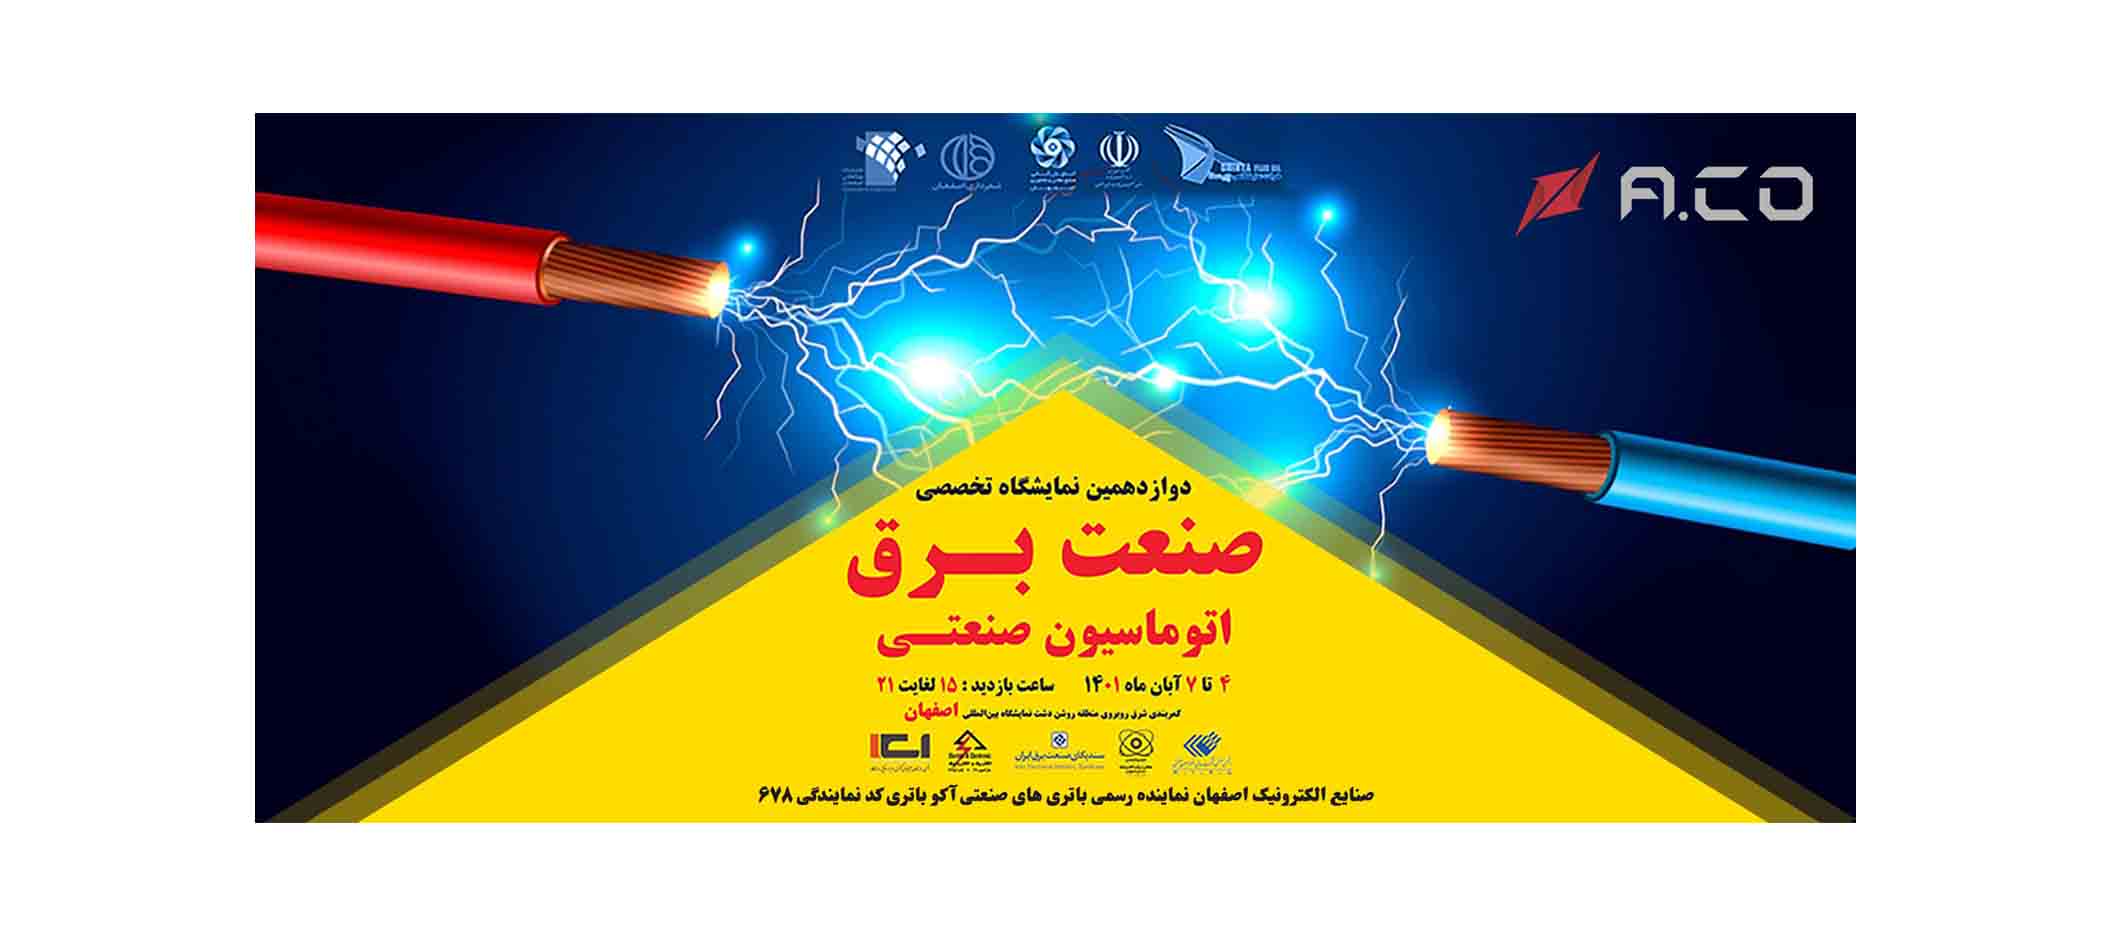 نمایشگاه صنعت برق اتوماسیون صنعتی اصفهان